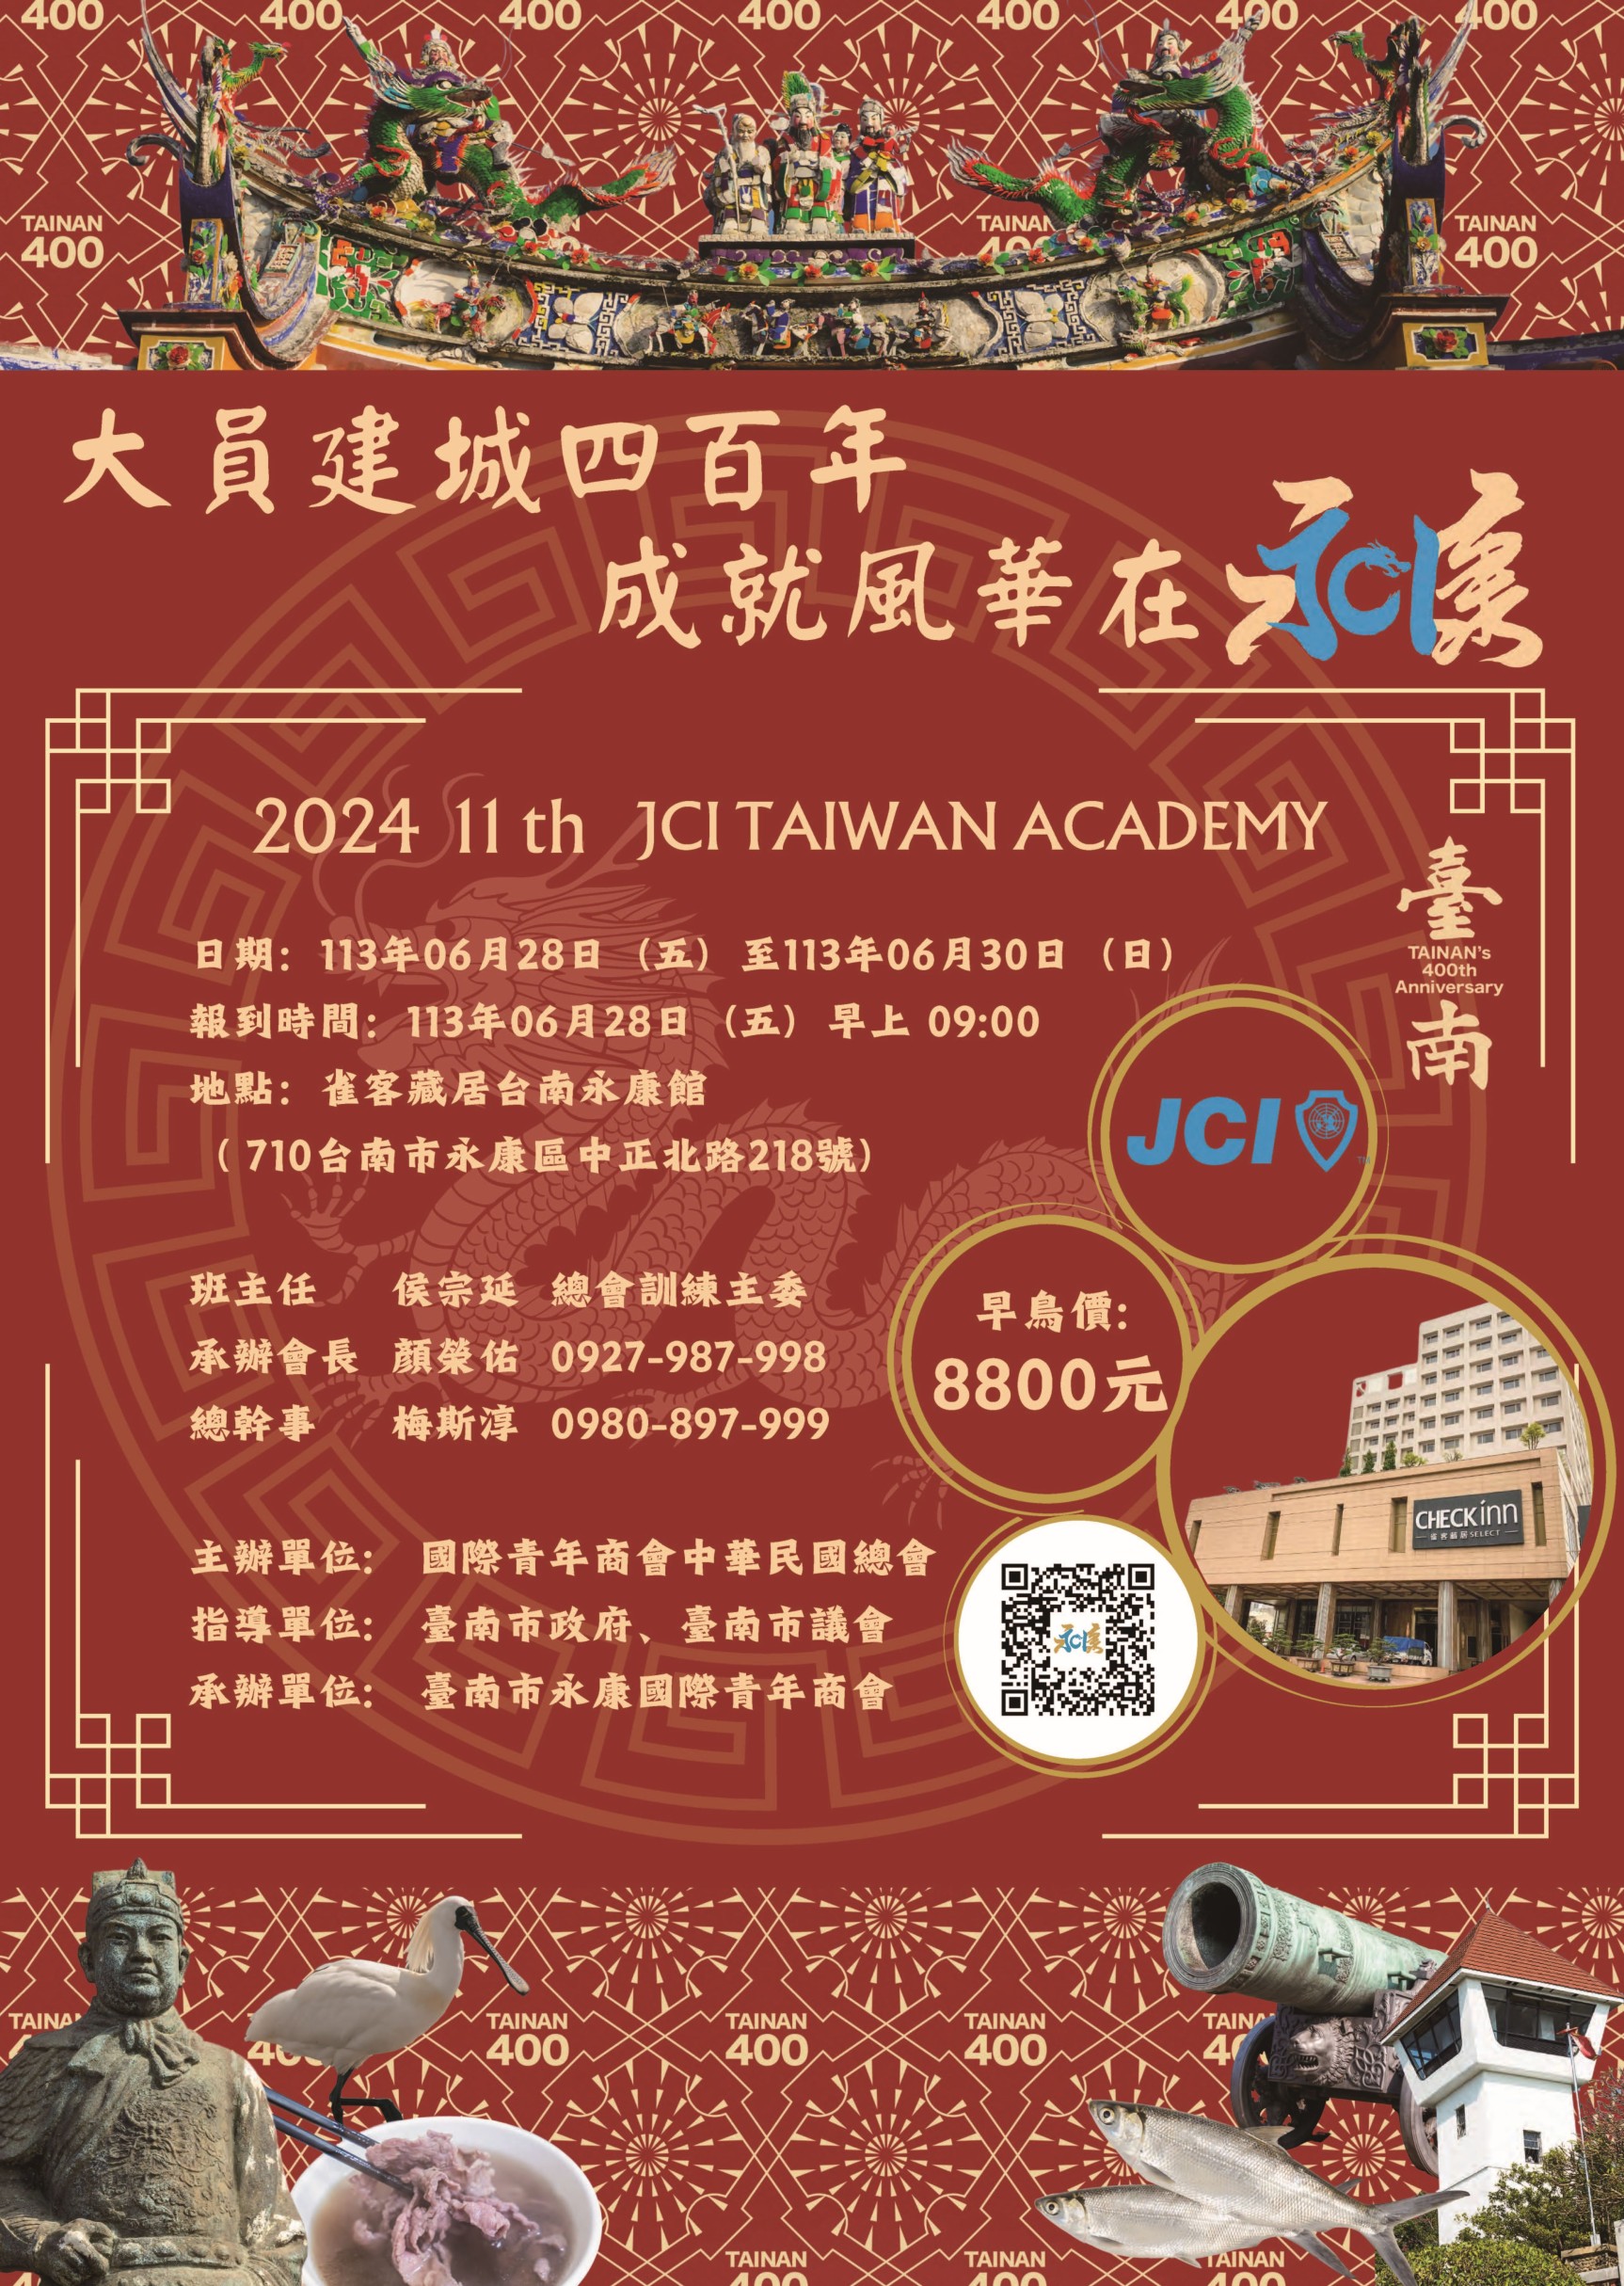 JCI Taiwan Academy